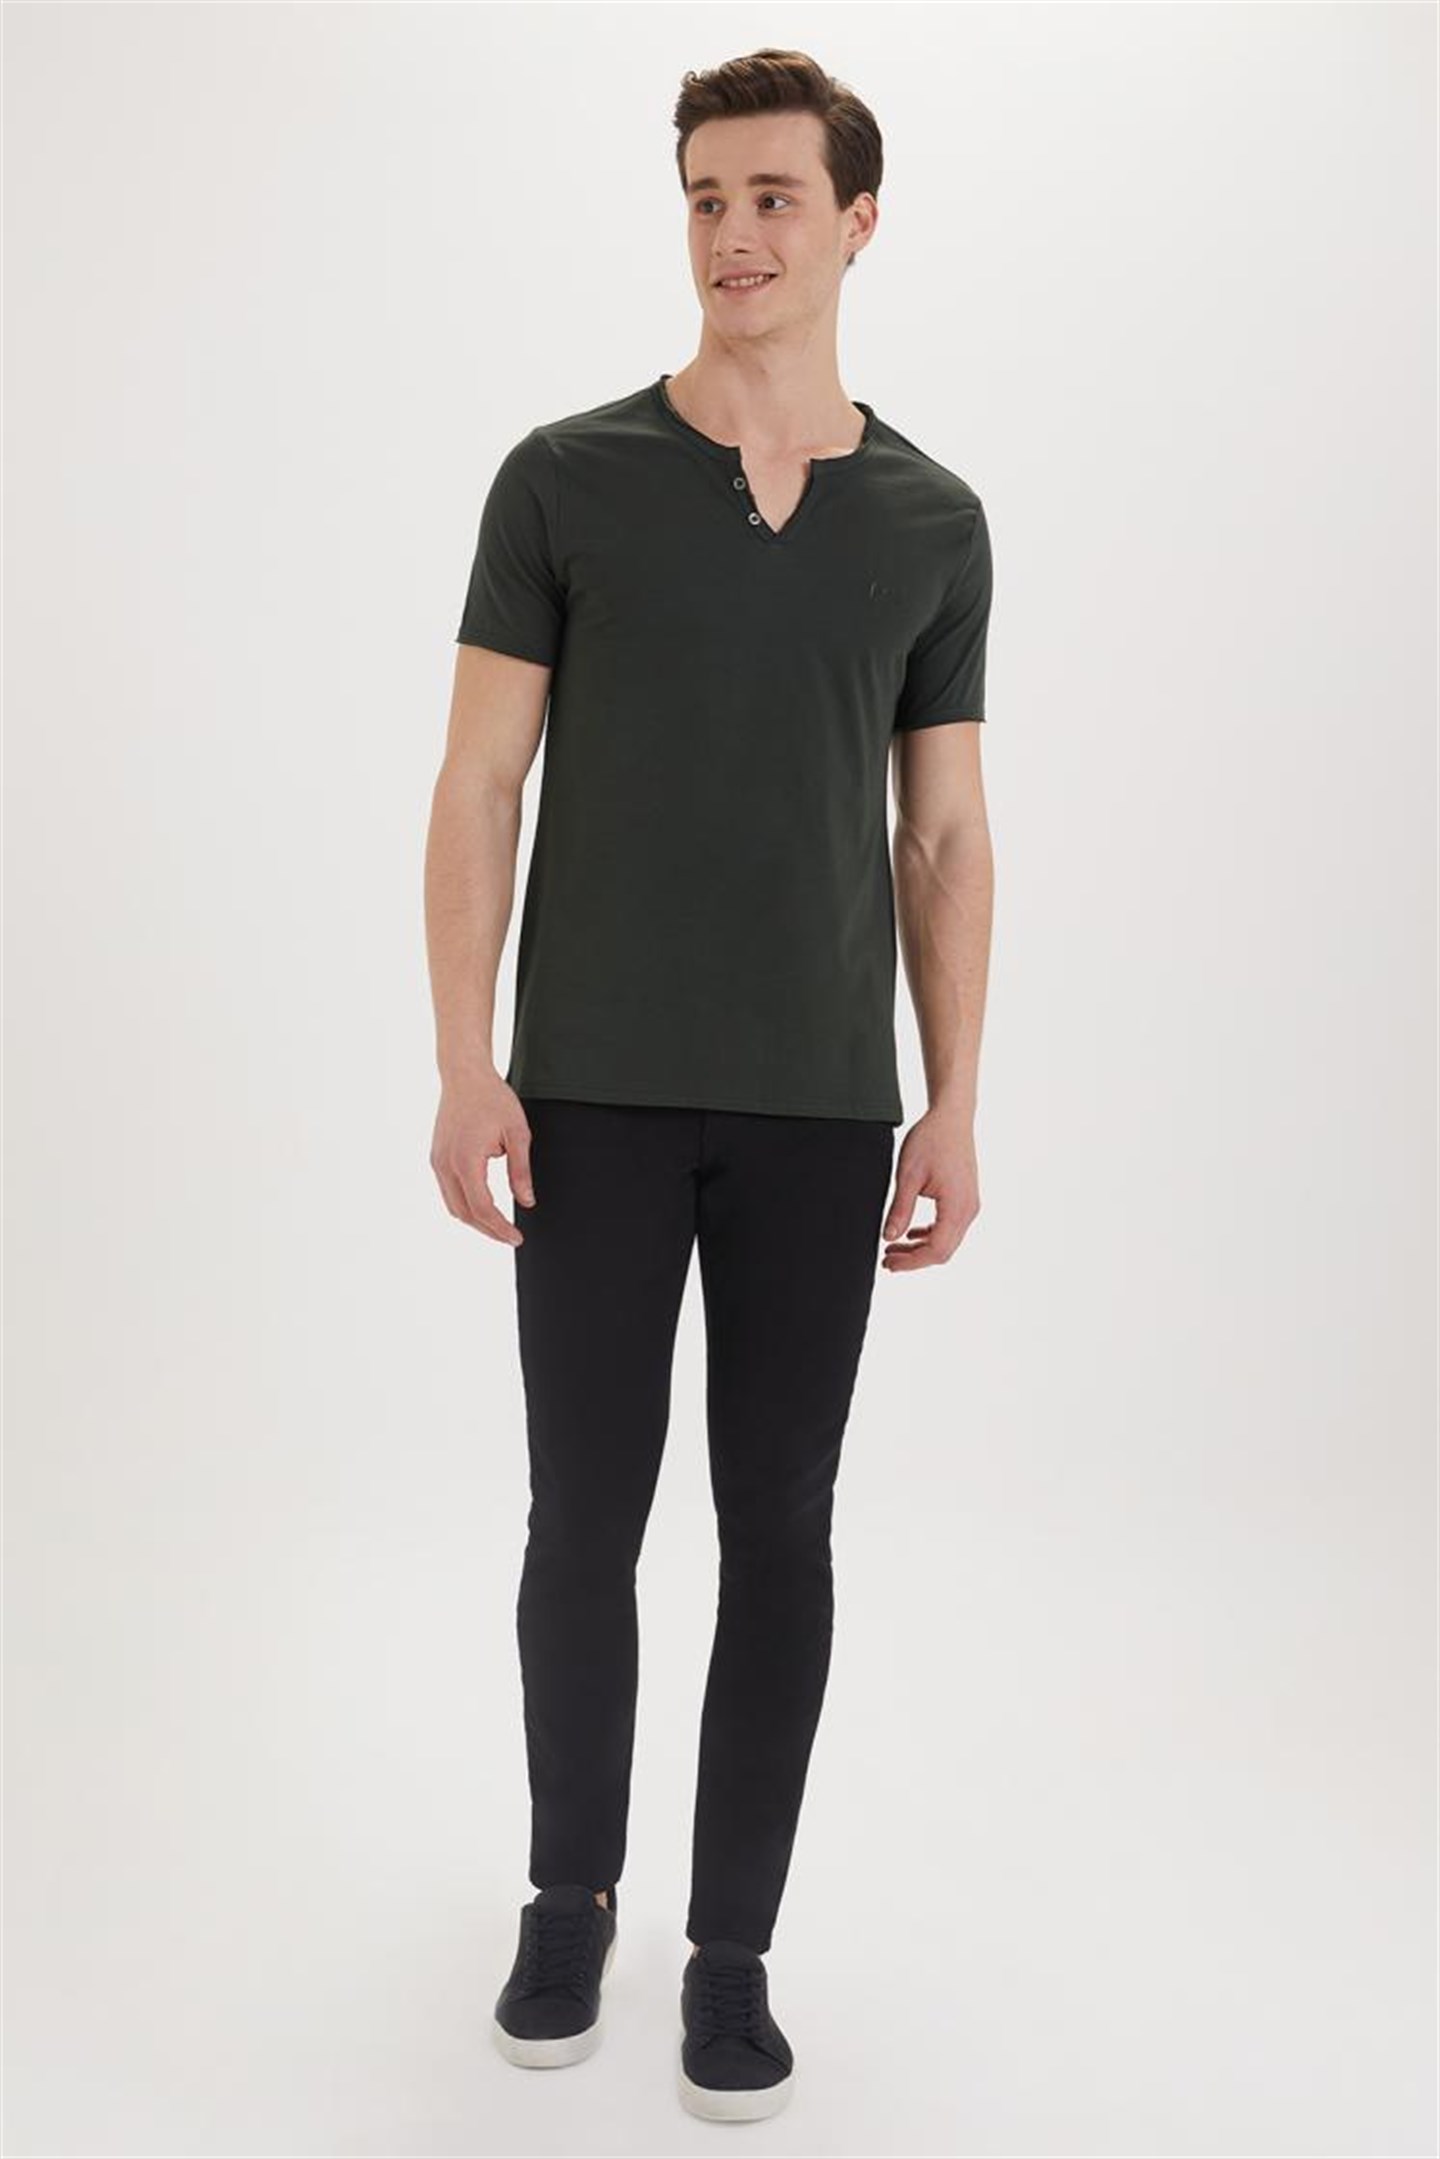 Lee Cooper Target Erkek V Yaka Patlı T-Shirt Koyu Yeşil. 1